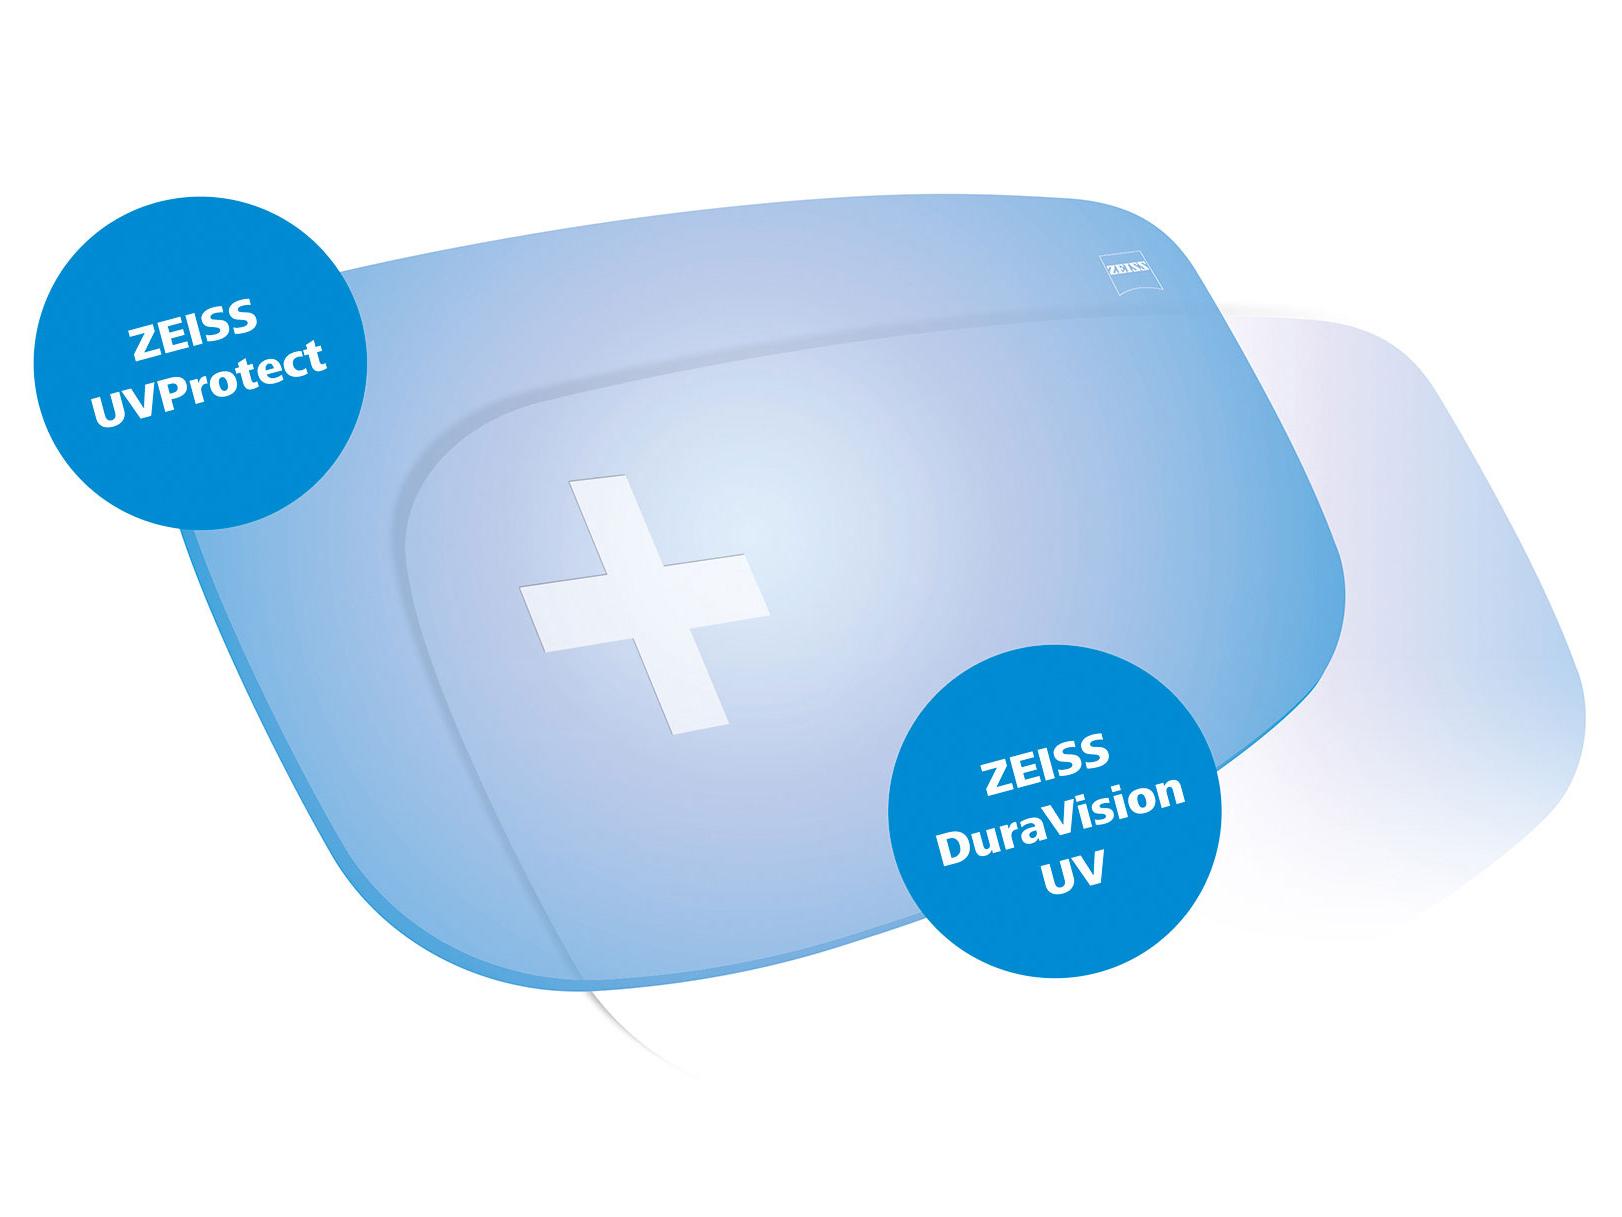 Minden ZEISS lencse alapértelmezett módon teljes körű UV-védelmet biztosít minden oldalról. Az ábrán két megoldás látható.